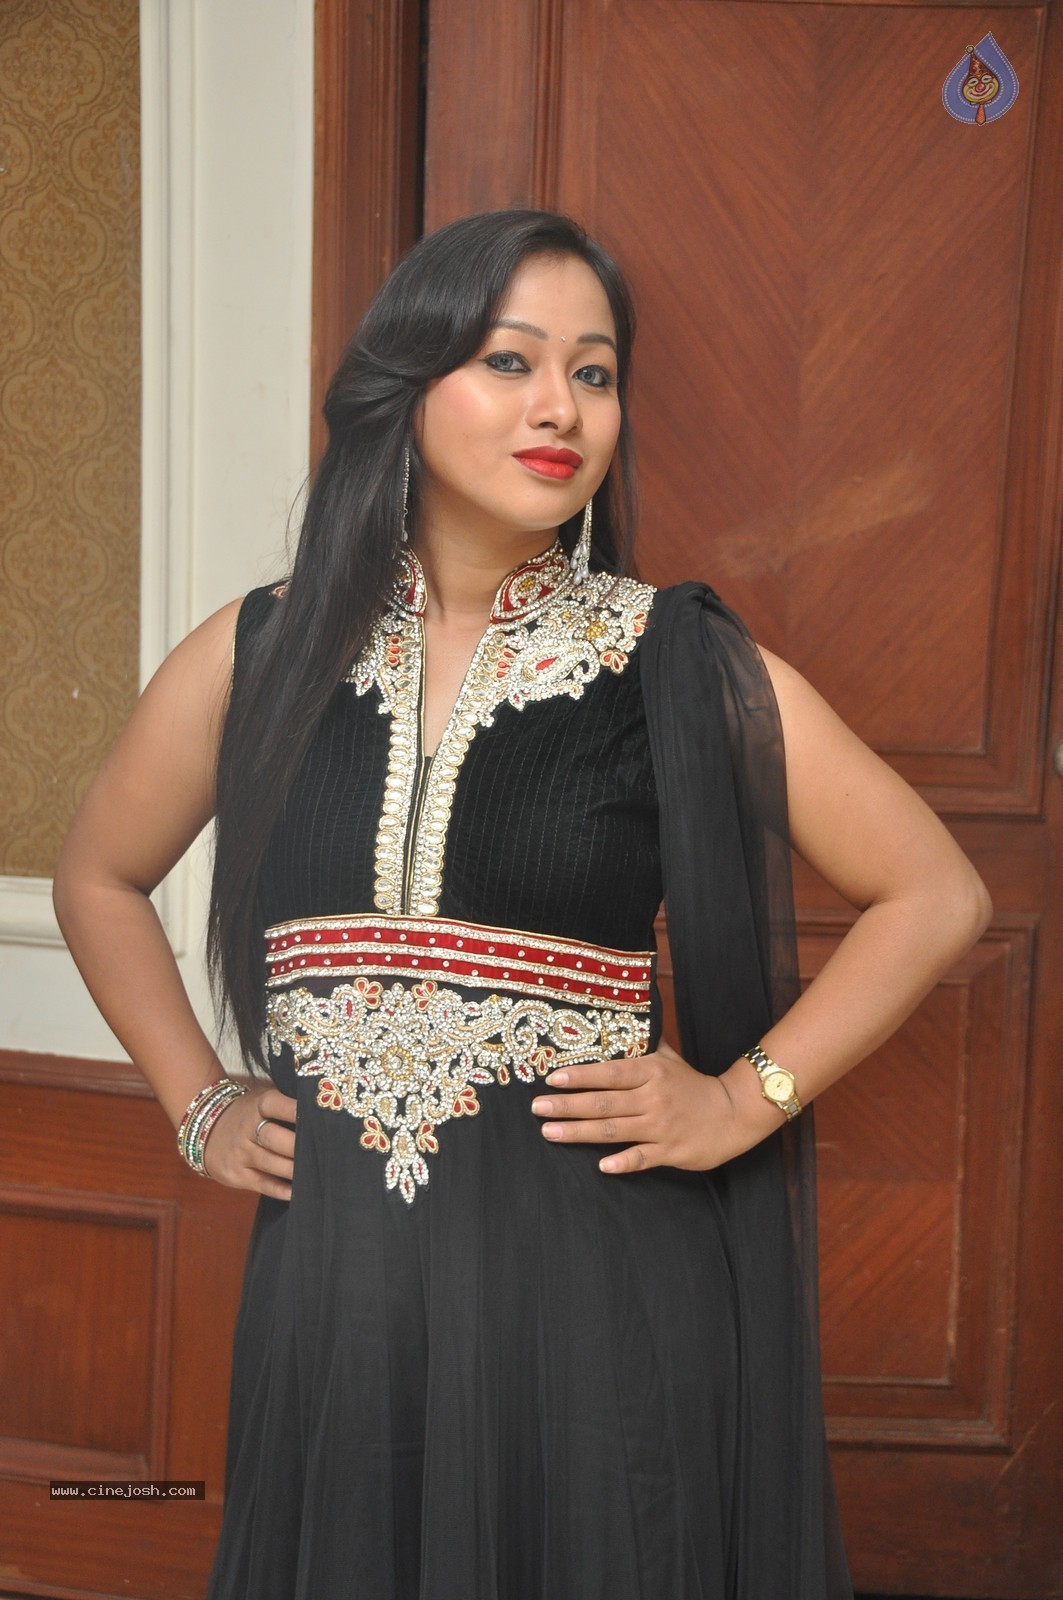 Actress Sneha Photos - 17 / 62 photos